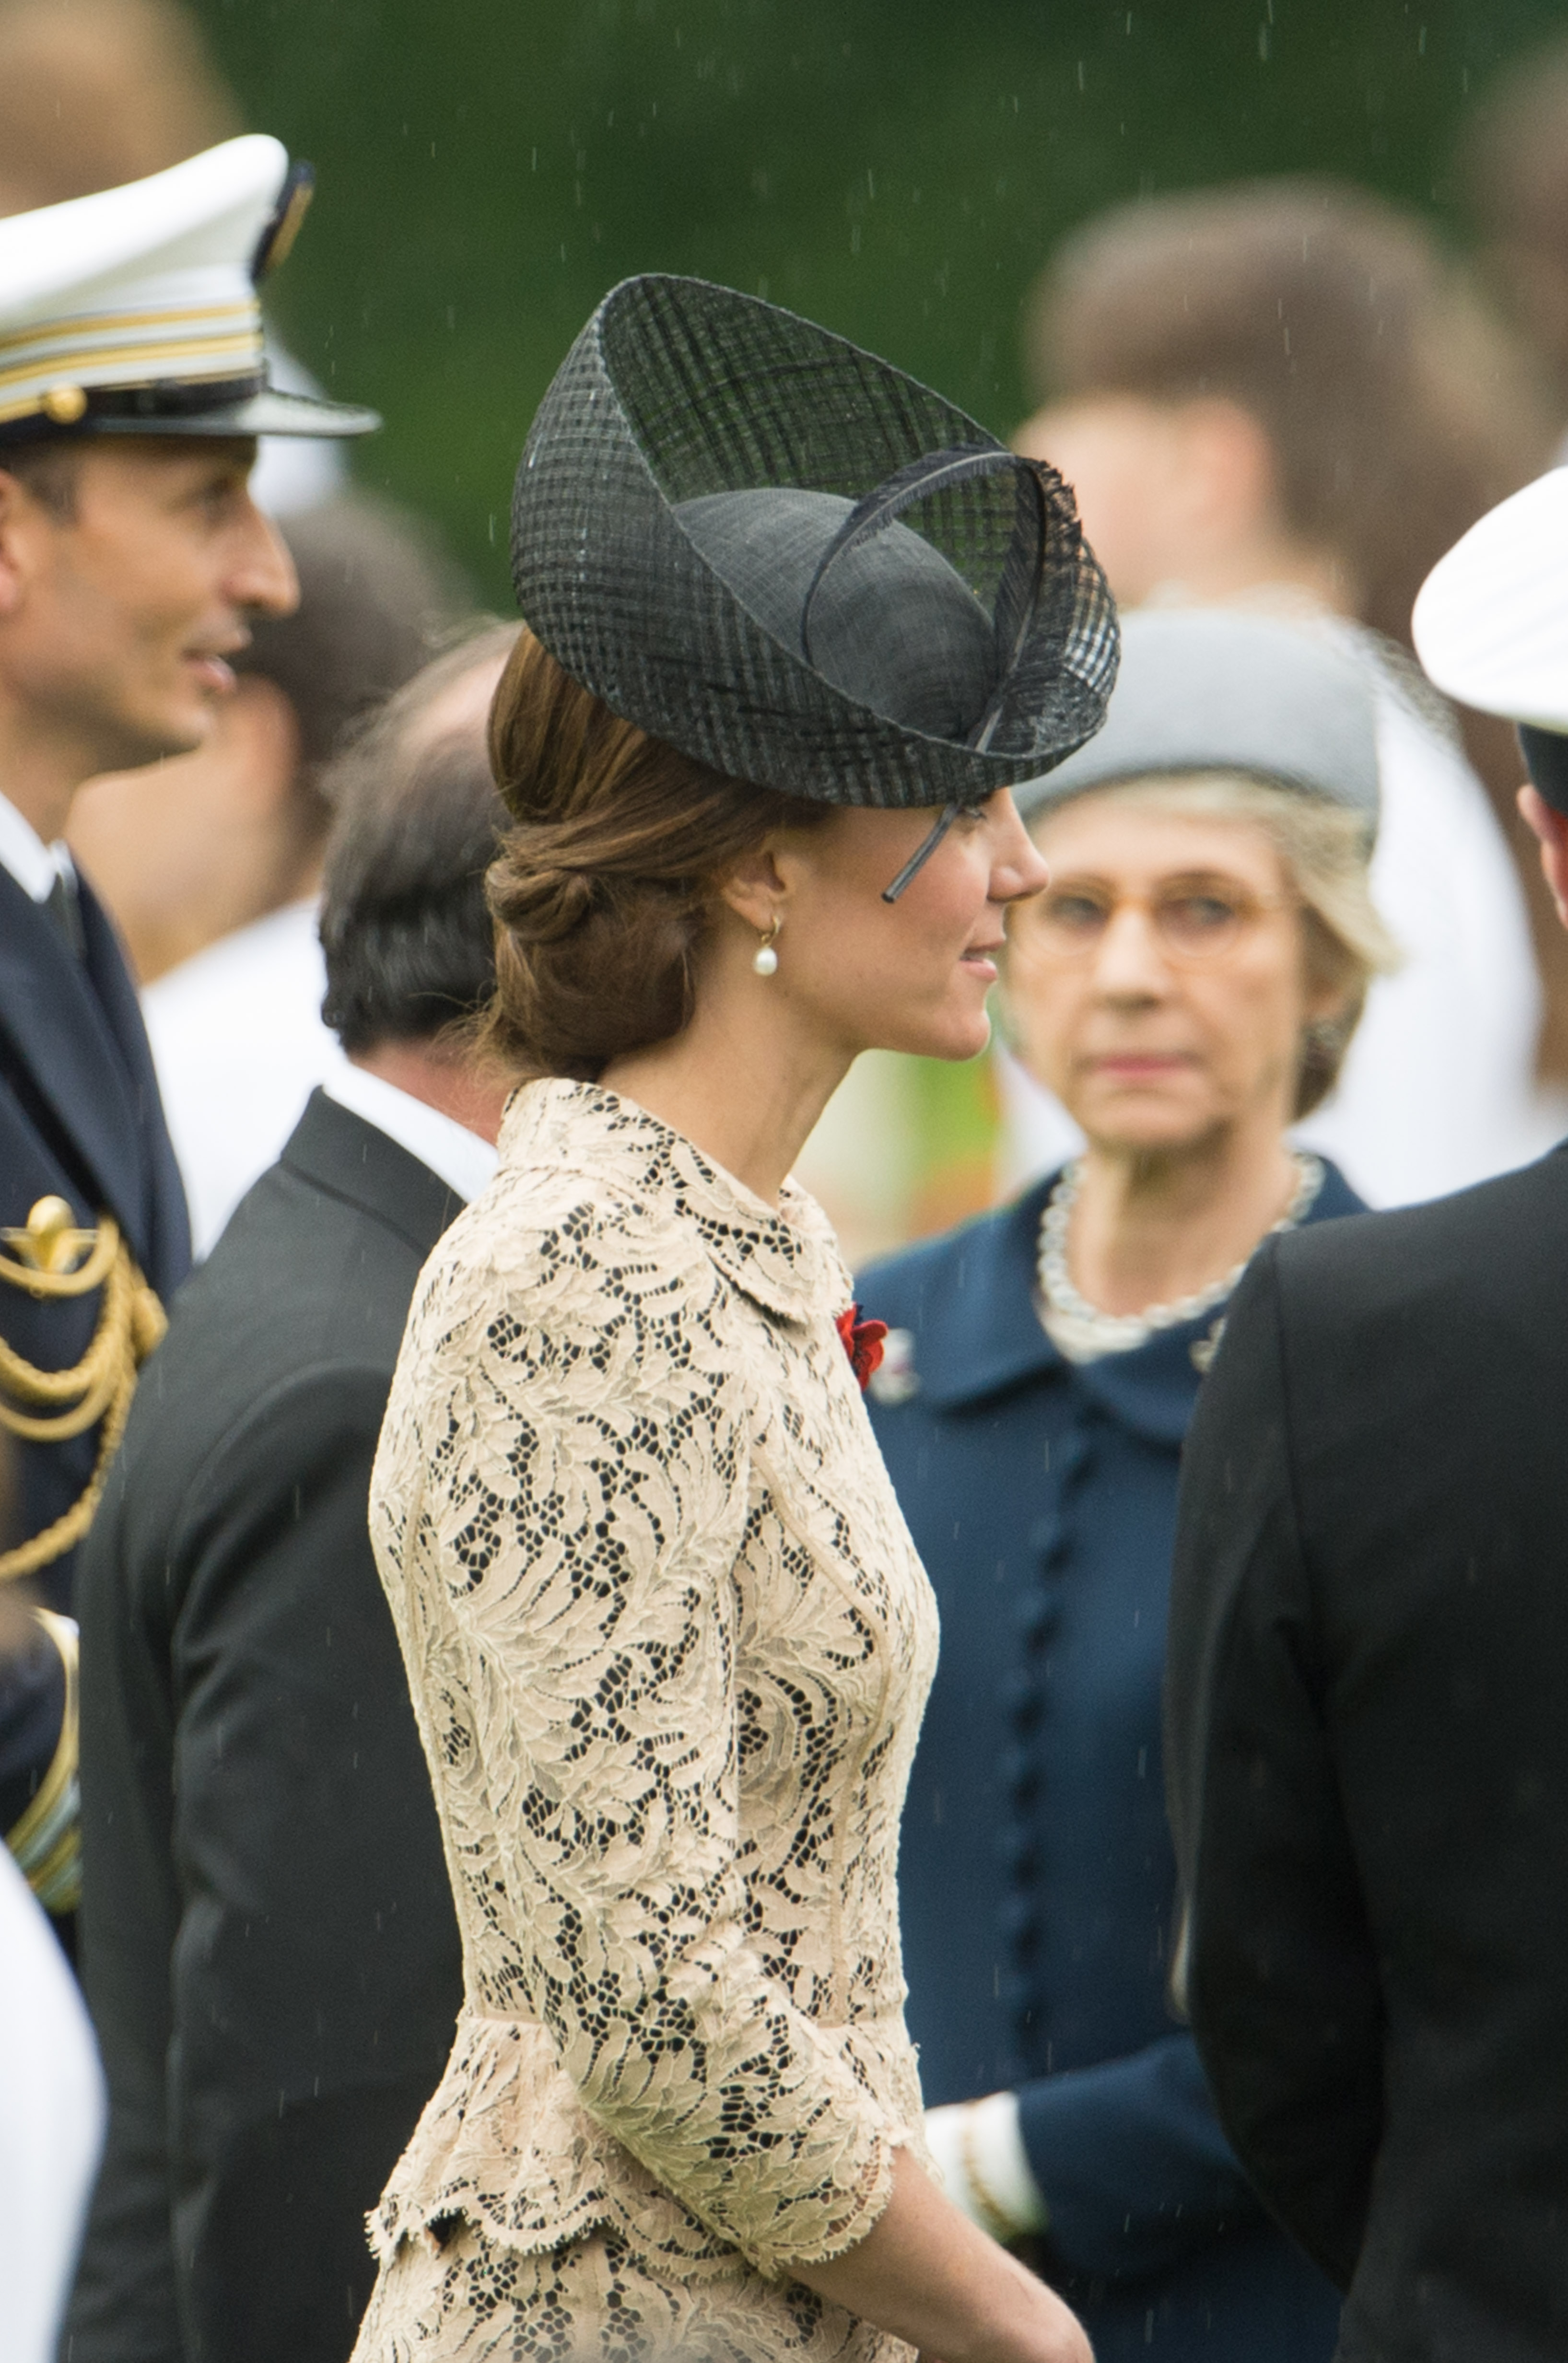 Catherine, duchesse de Cambridge lors de la commémoration du centenaire de la bataille de la Somme au mémorial de Thiepval de la Commonwealth War Graves Commission, le 1er juillet 2016 à Thiepval, France | Source : Getty Images